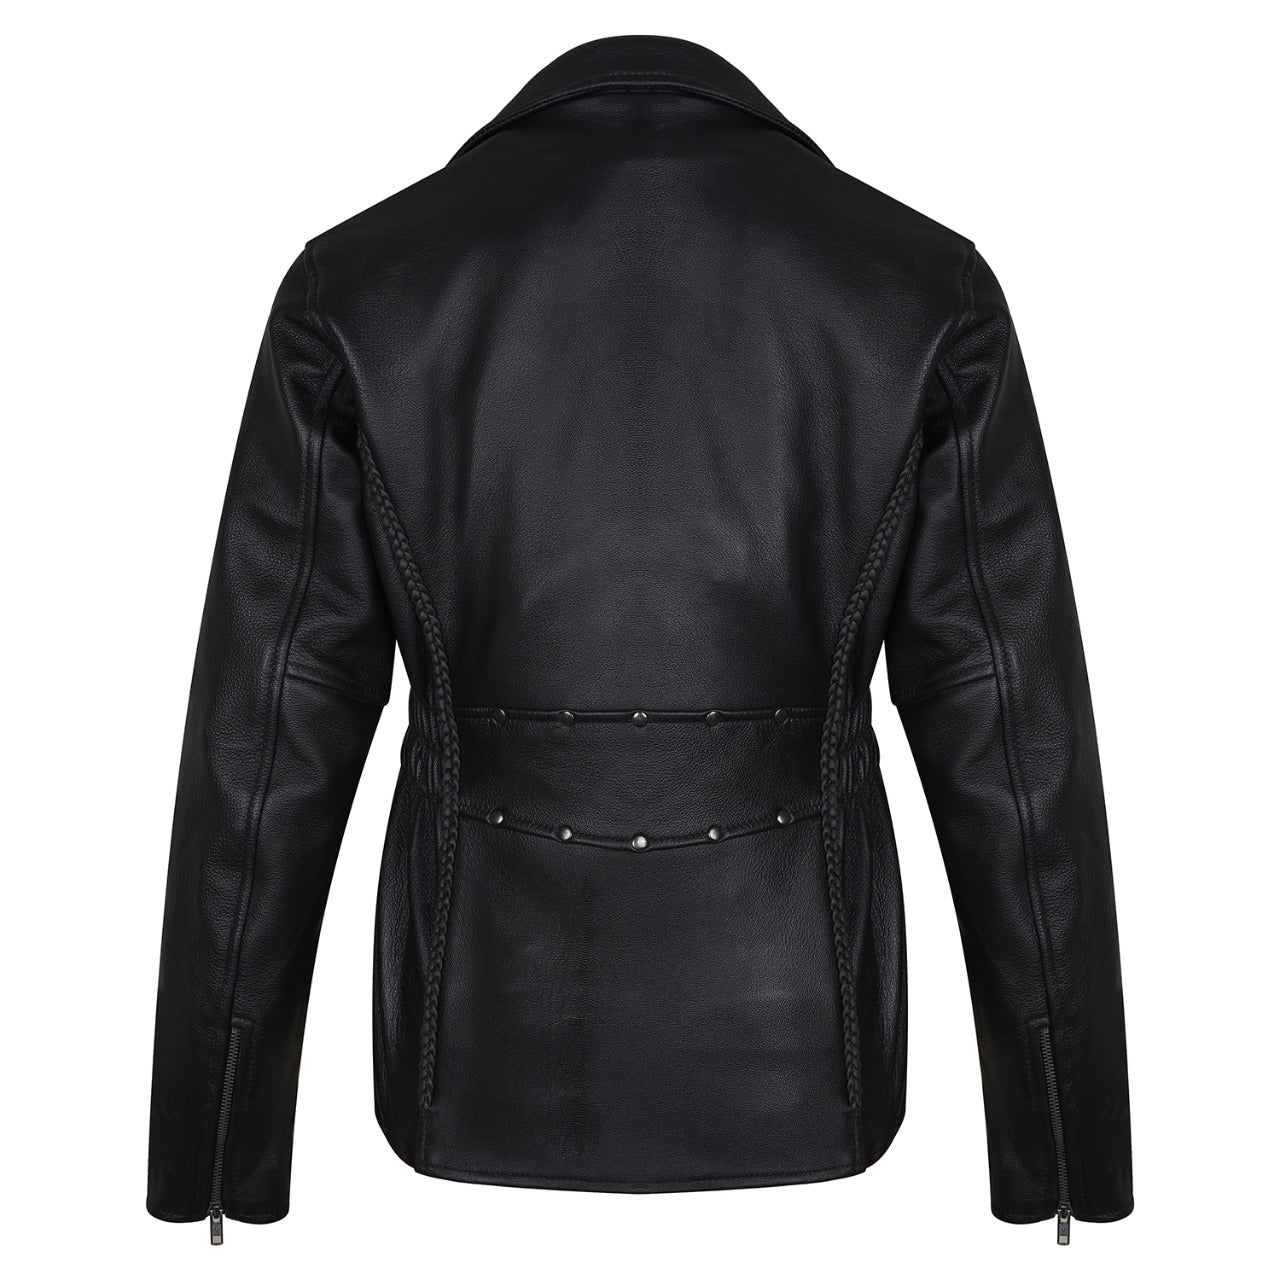 VL615 Vance Leather Ladies Premium Cowhide Braid and Stud Motorcycle Leather Jacket